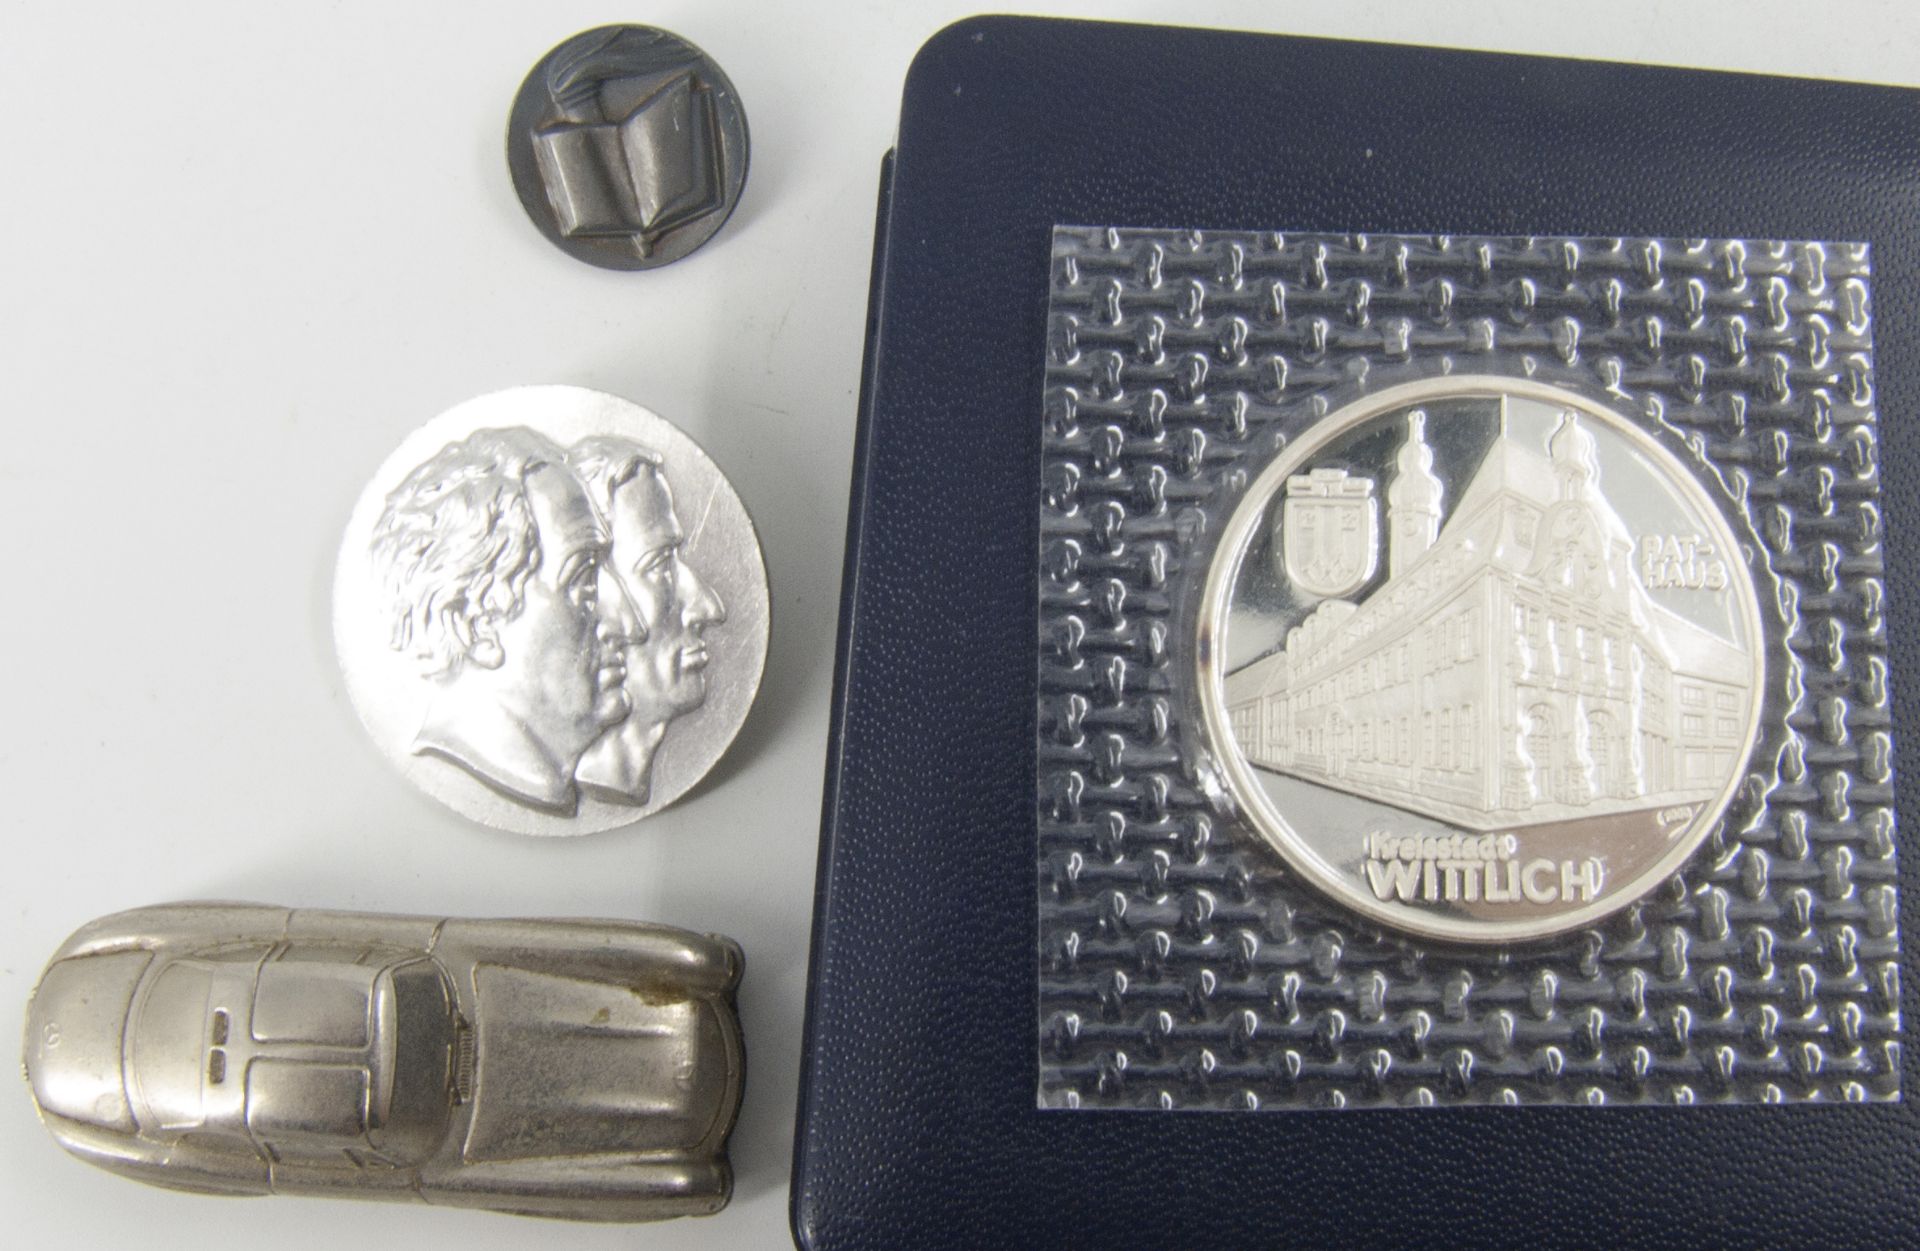 Silbermedaille Stadt Wittlich, Silber 1000, Durchmesser: ca. 35 mm. Dazu zwei Anstecknadeln und